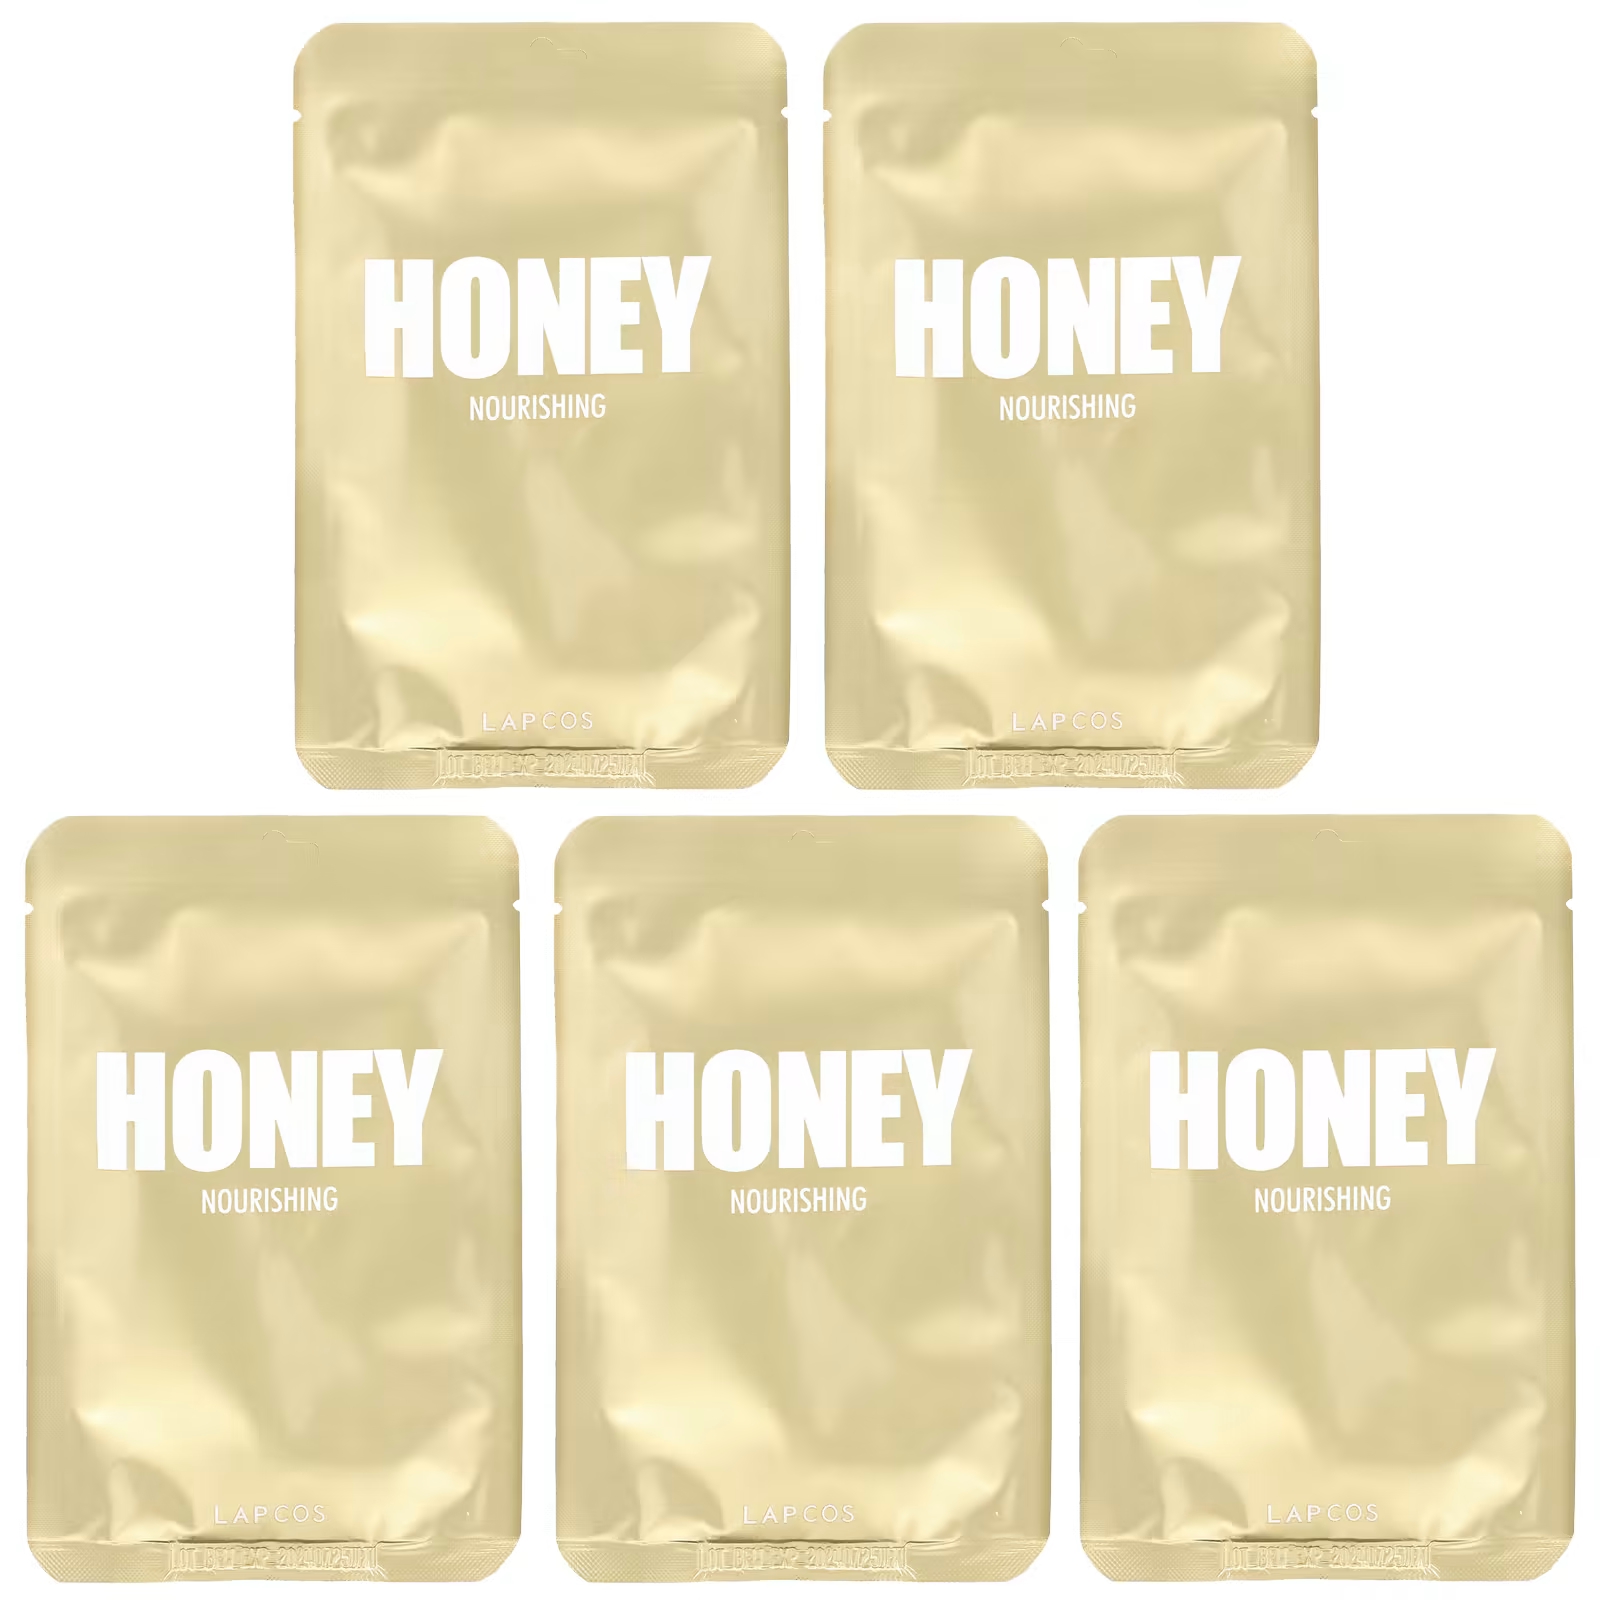 Набор питательных тканевых масок Lapcos Honey Beauty, 5 листов по 0,91 жидкой унции (27 мл) каждый маска пилинг для ног с экстрактом меда